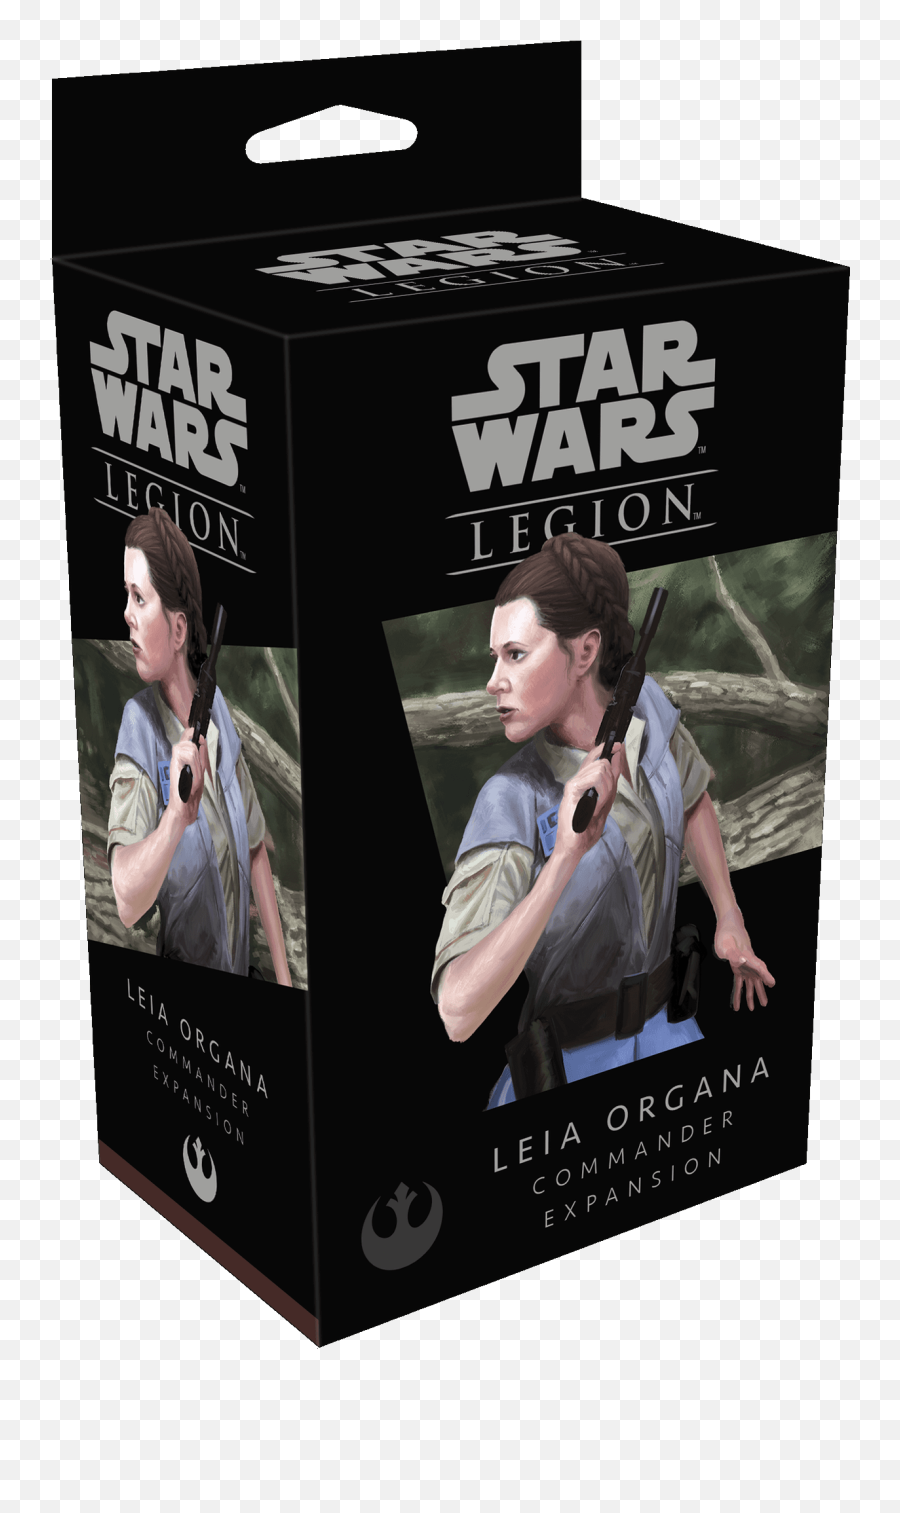 Star Wars Legion Princess Leia Organa - Star Wars Legion Leia Organa Commander Expansion Emoji,Princess Leia In Emoji